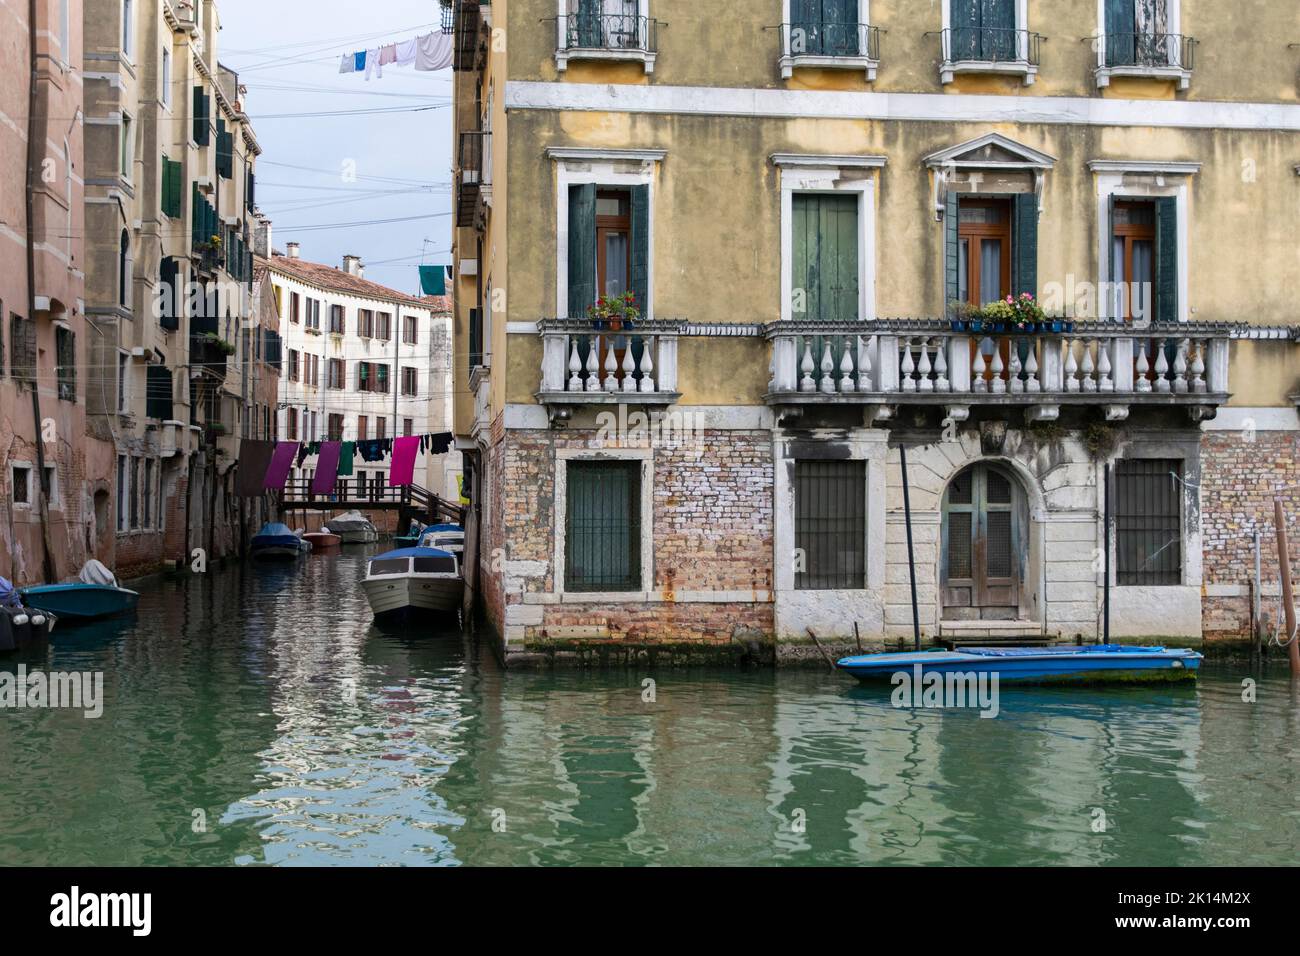 Street scene at Venice, Italy Stock Photo